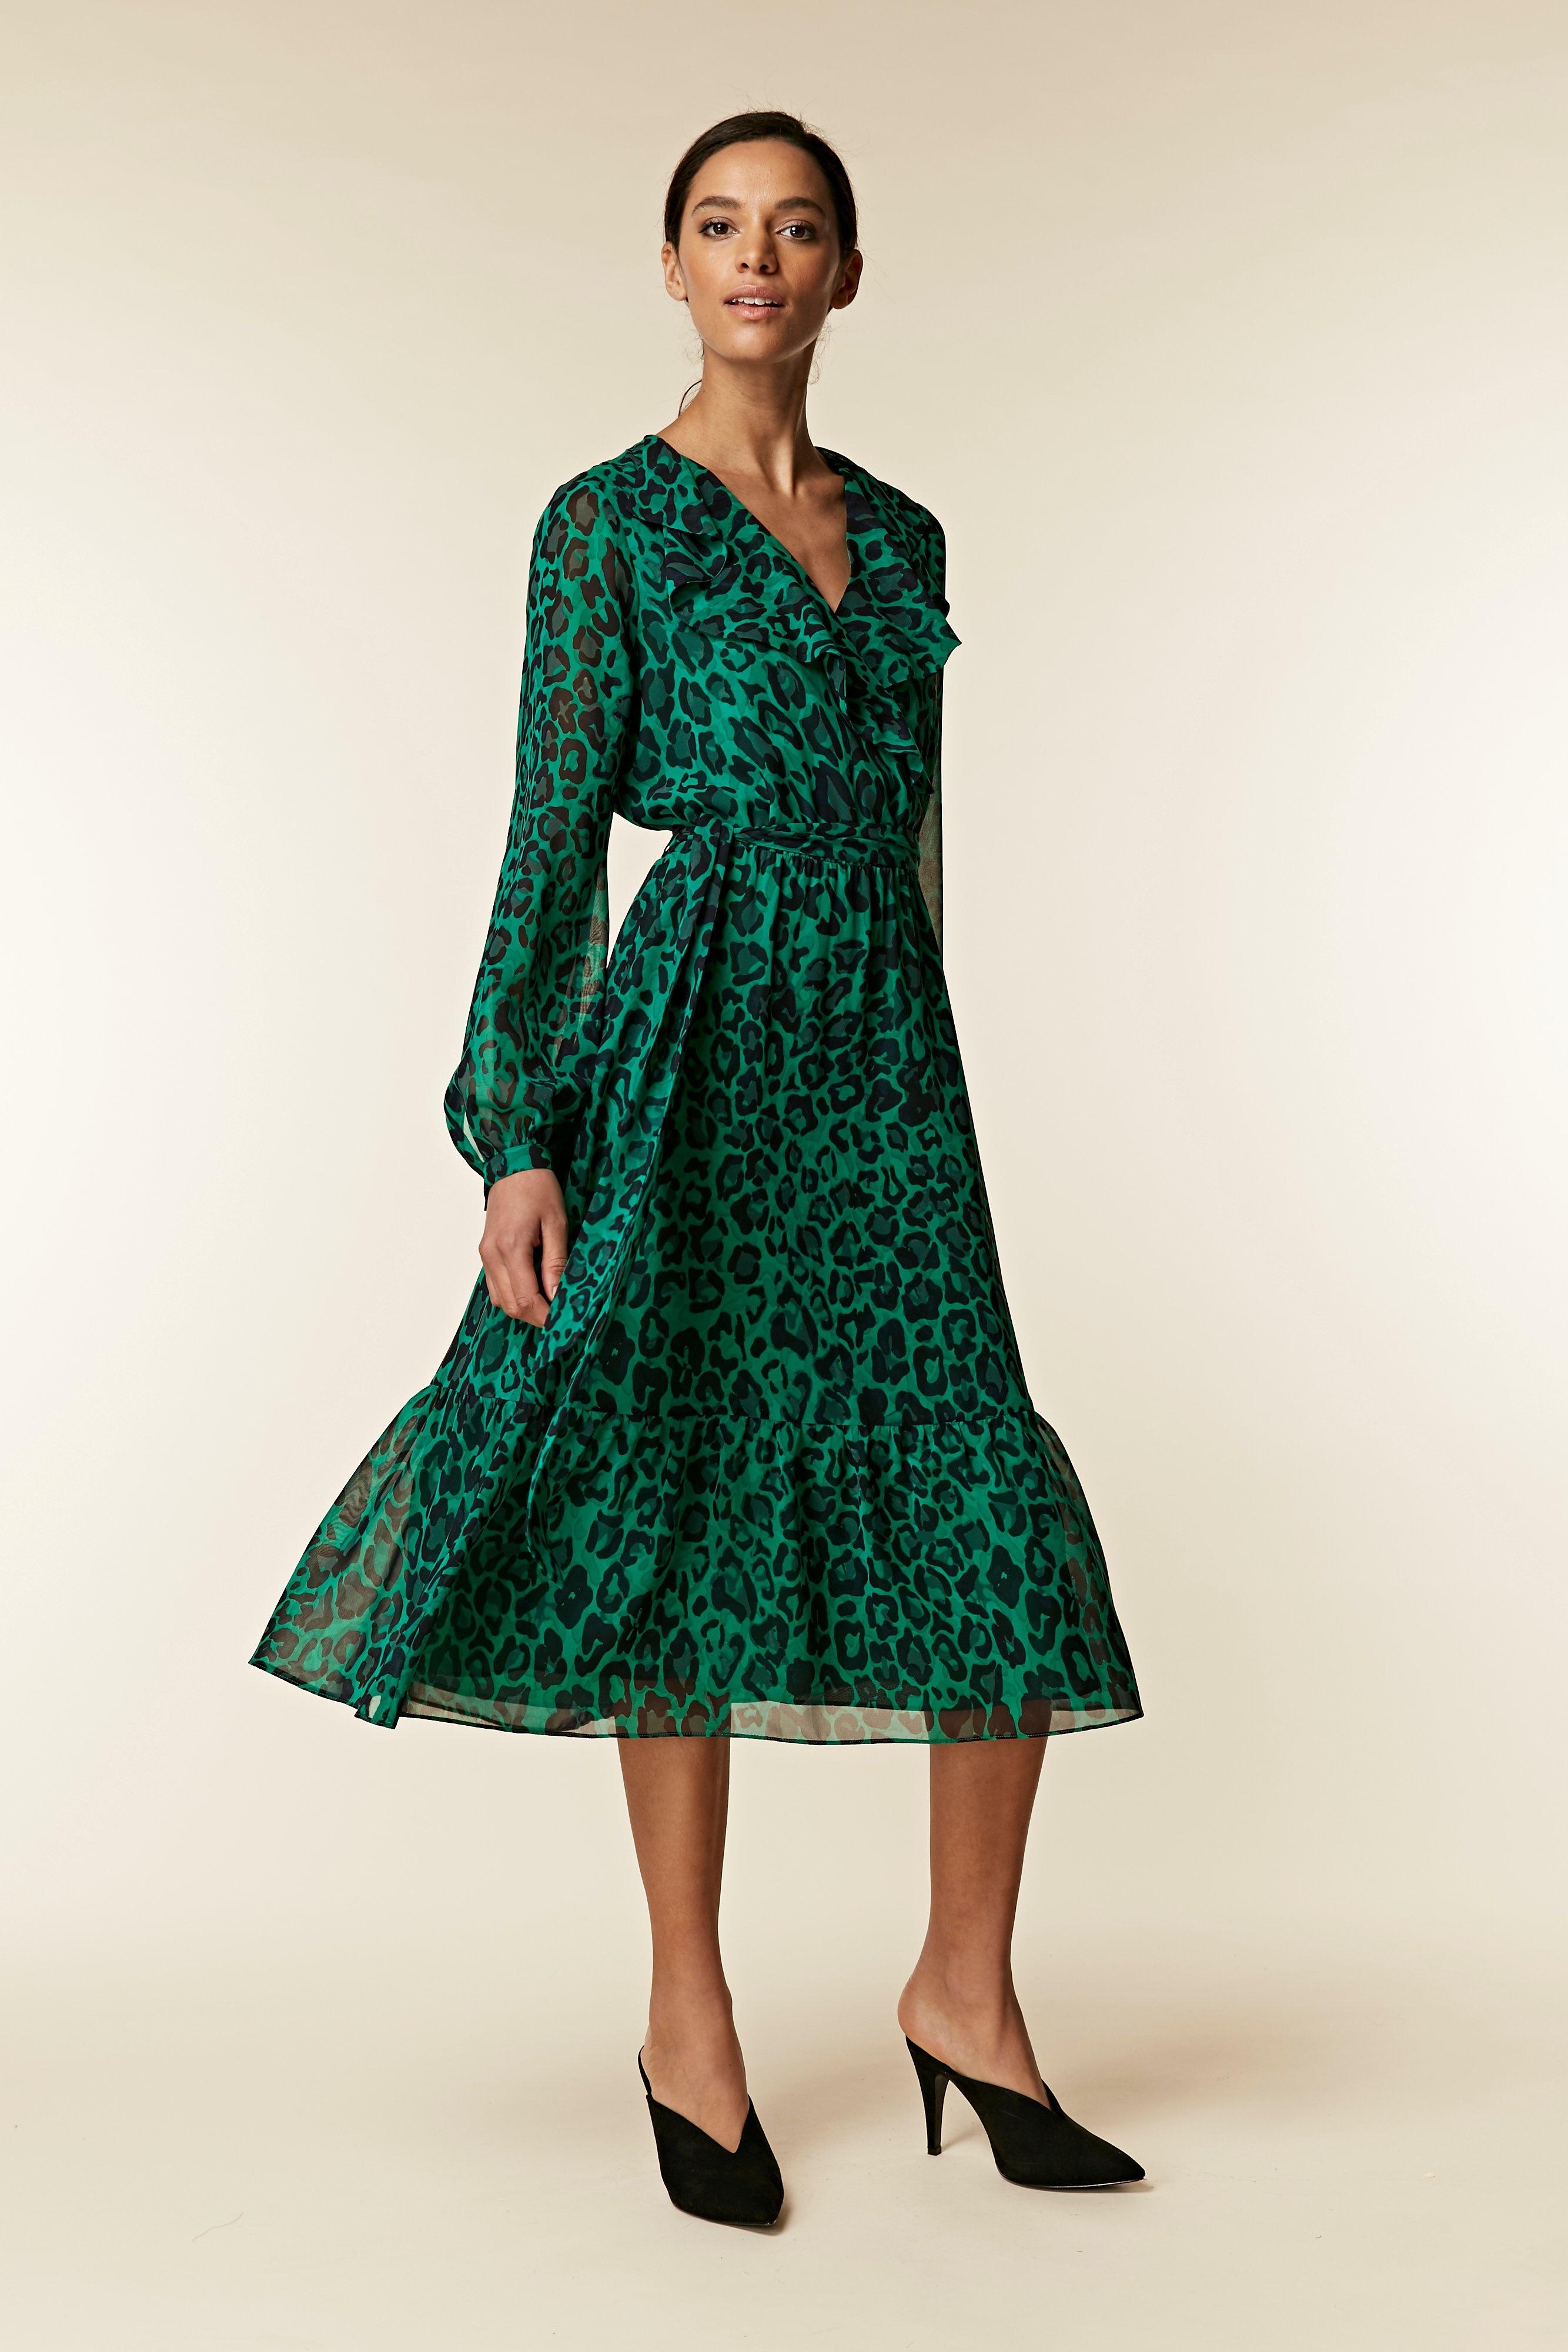 Leopard Print Dress Wallis Flash Sales, UP TO 56% OFF |  www.editorialelpirata.com